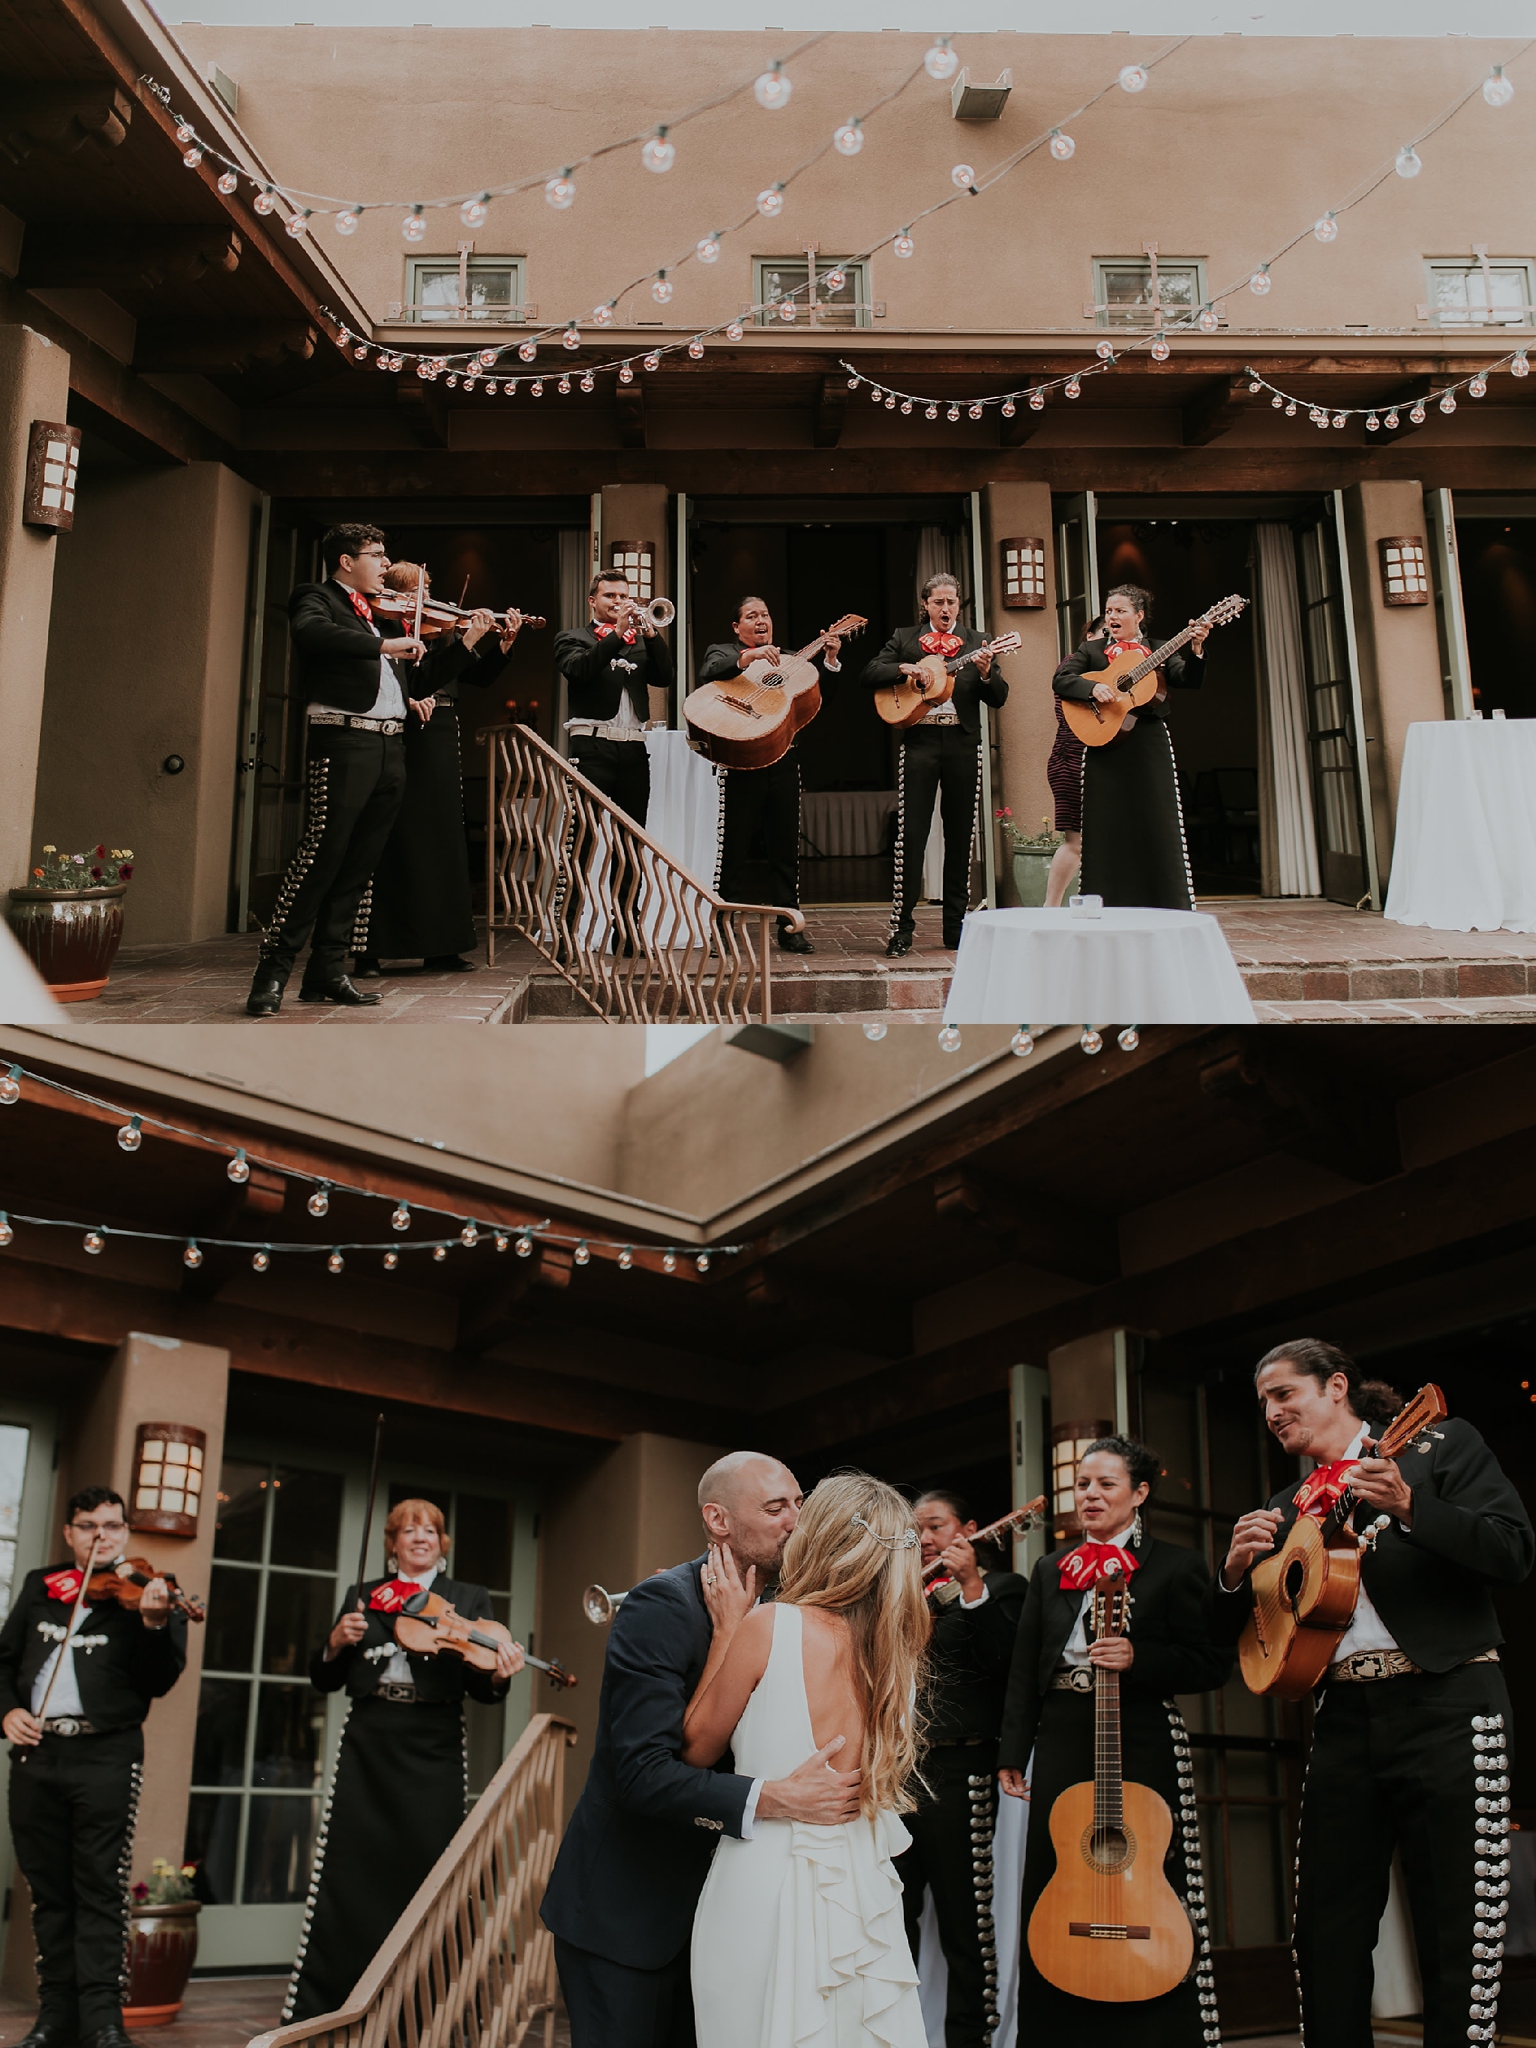 Alicia+lucia+photography+-+albuquerque+wedding+photographer+-+santa+fe+wedding+photography+-+new+mexico+wedding+photographer+-+new+mexico+wedding+-+santa+fe+wedding+-+albuquerque+wedding+-+southwest+wedding+traditions_0068.jpg